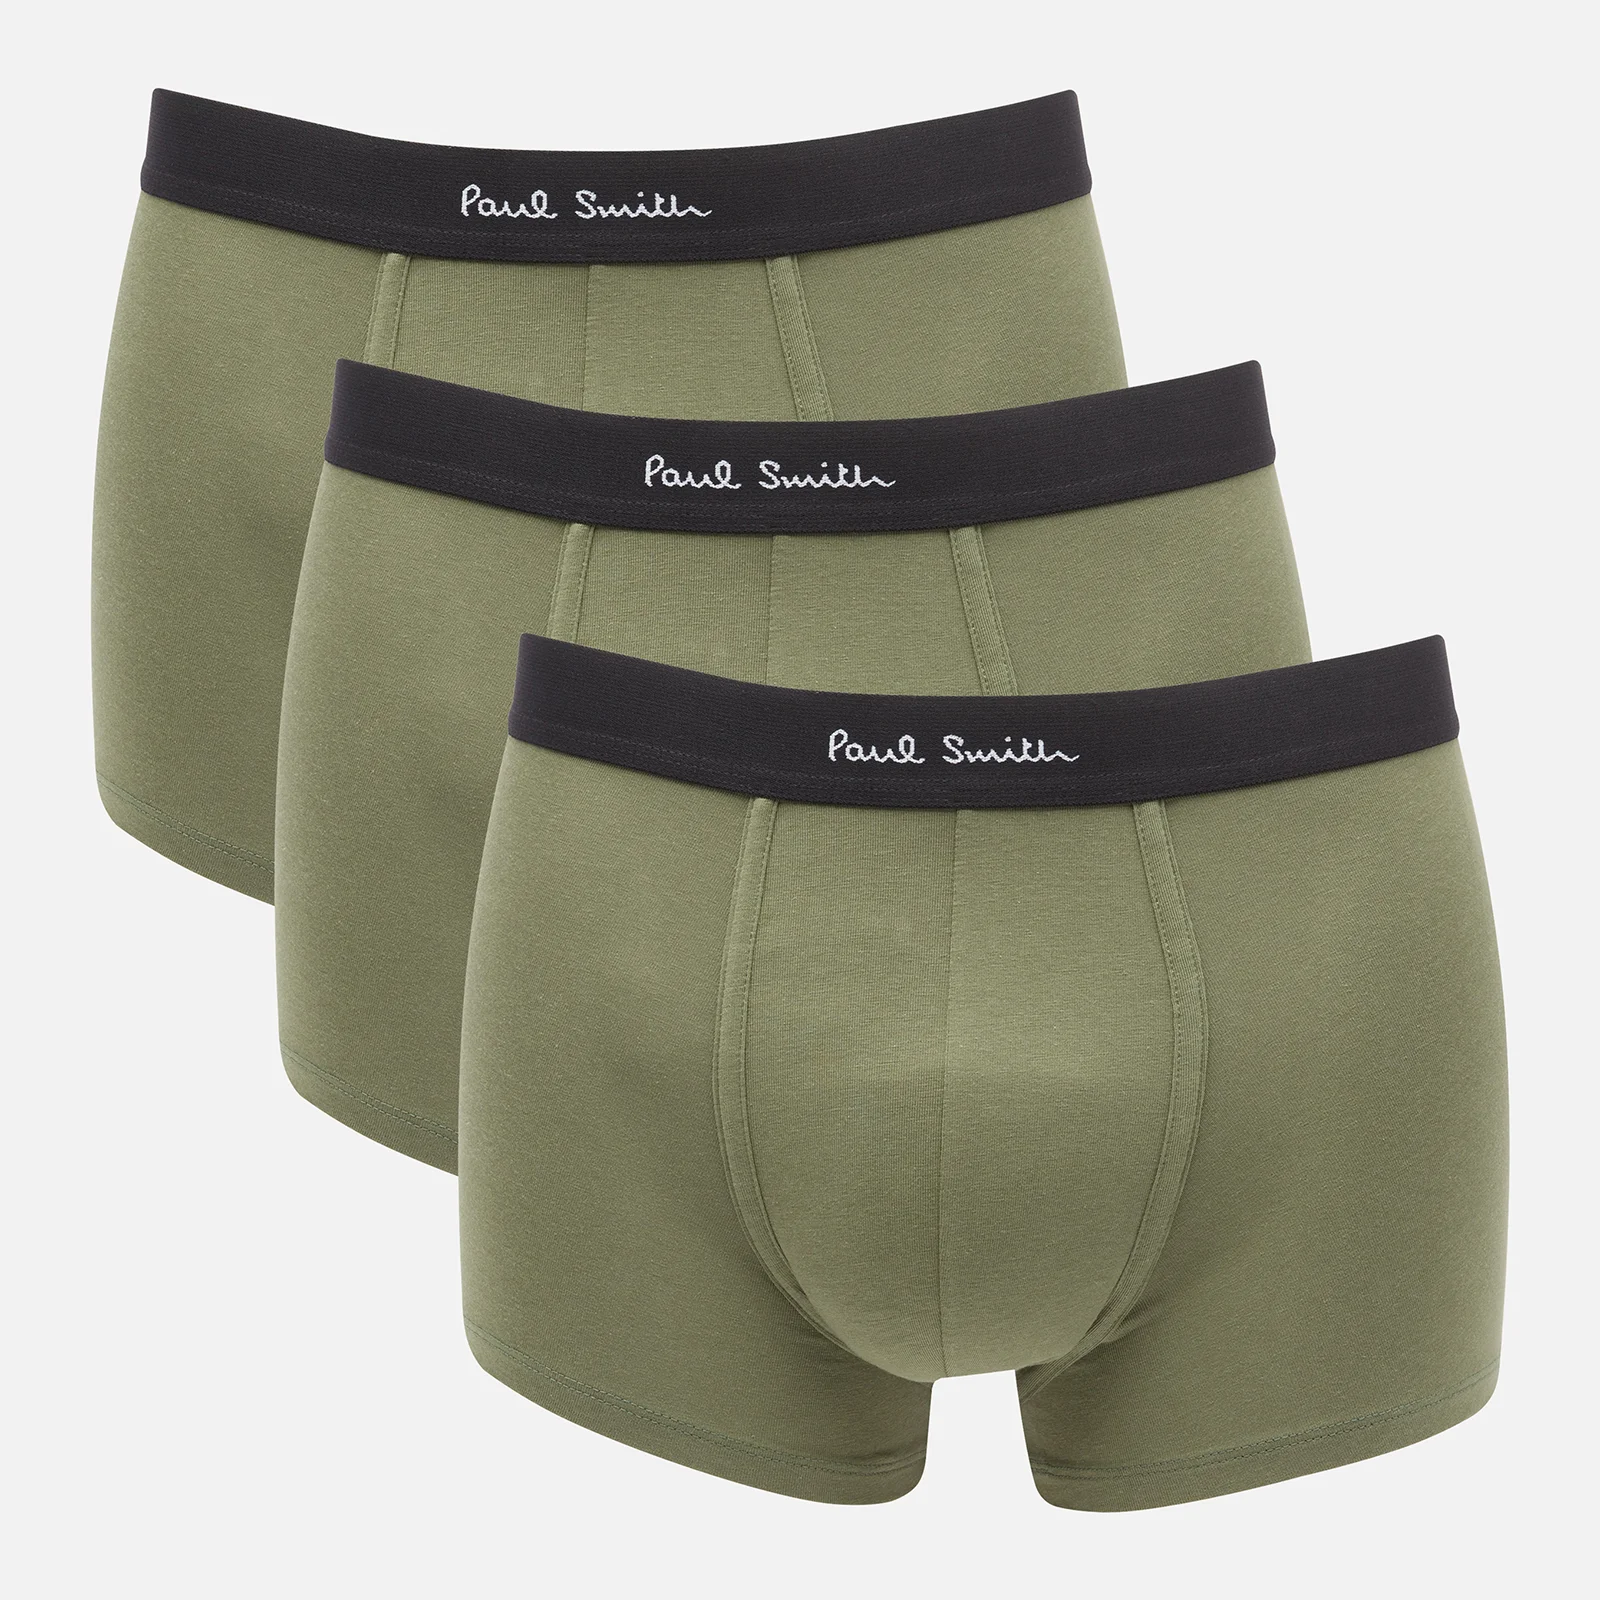 PS Paul Smith Men's 3-Pack Trunks - Khaki Image 1